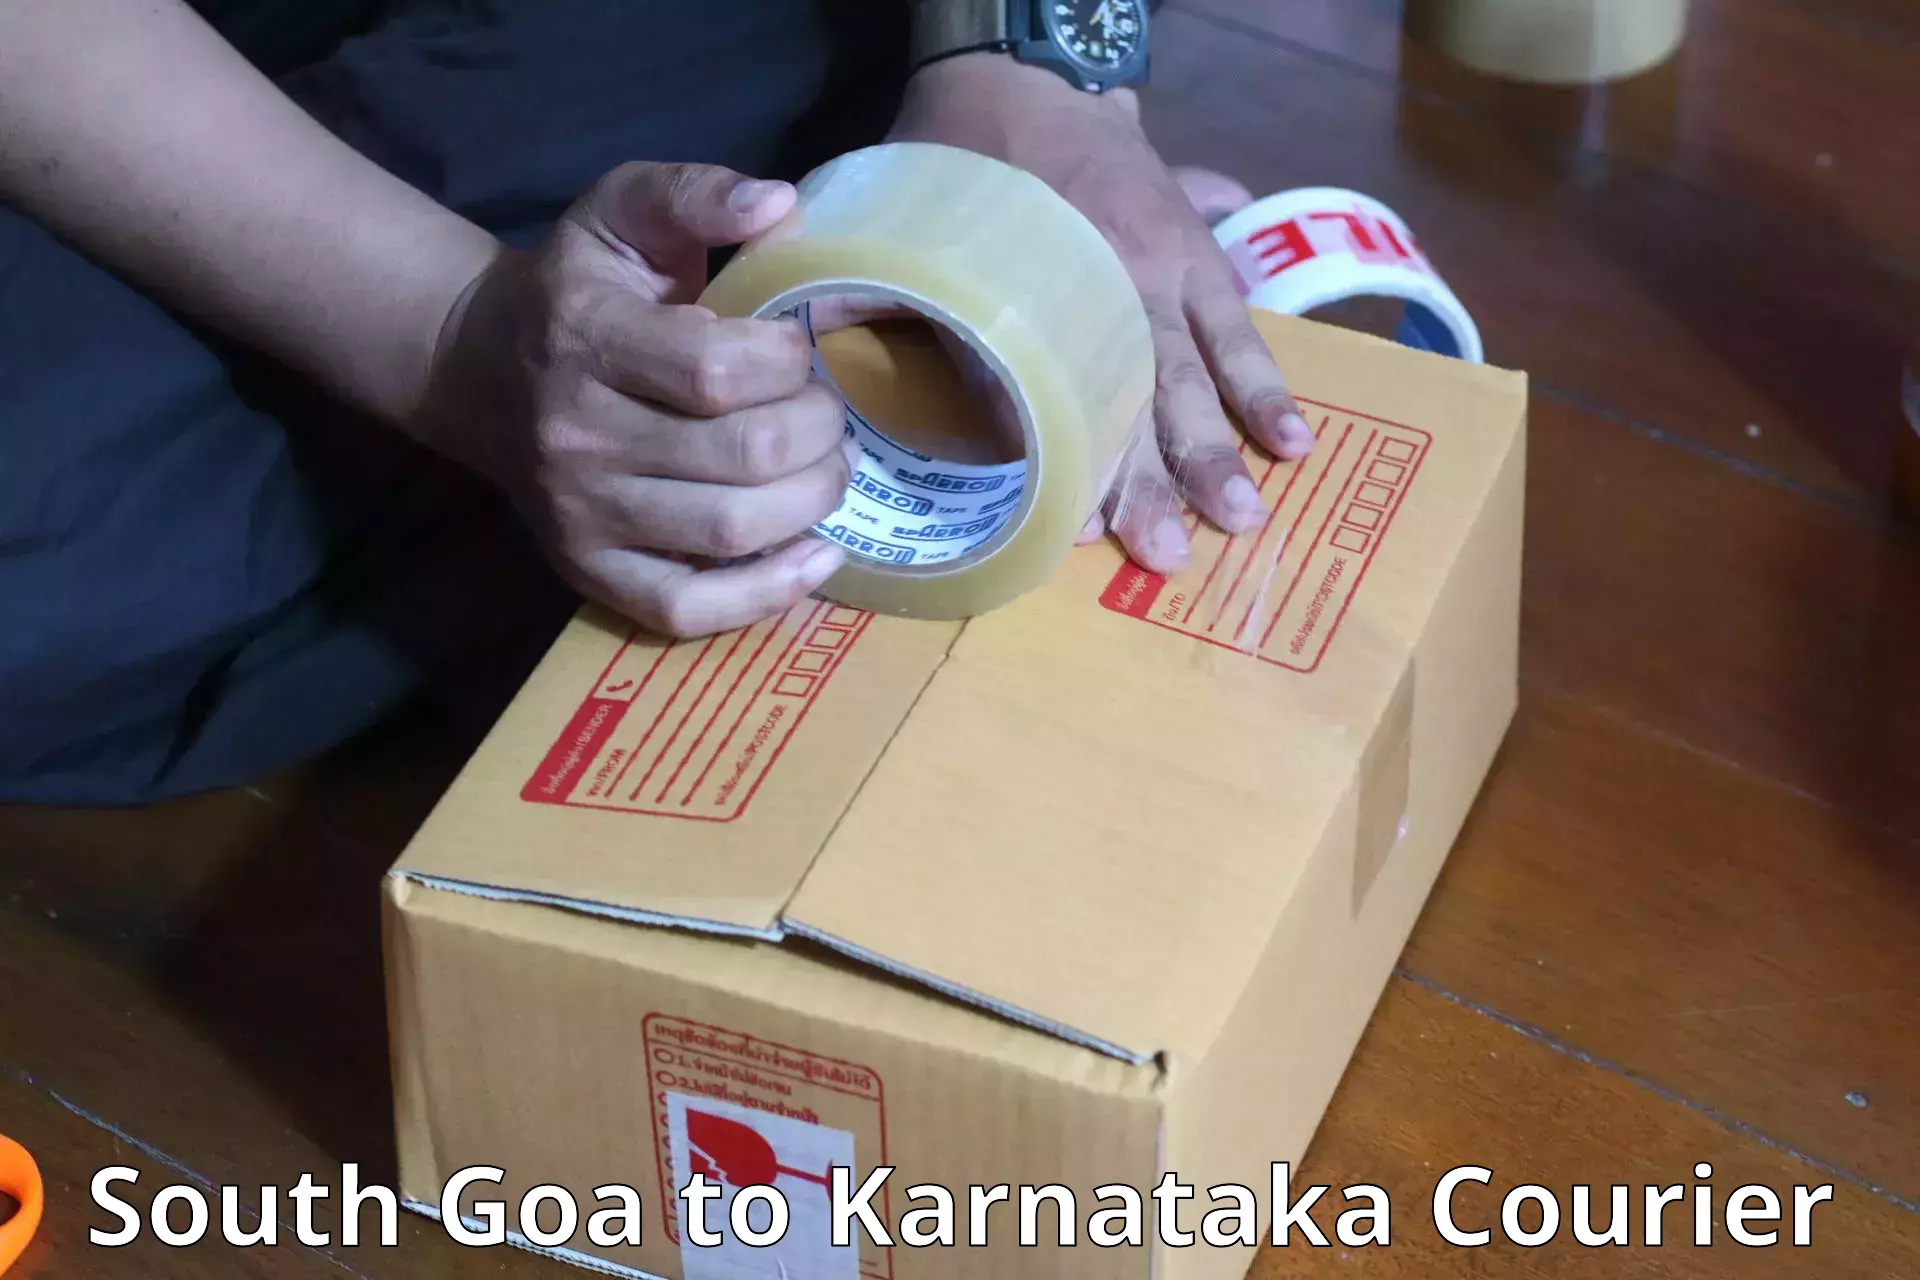 Baggage transport scheduler South Goa to Karnataka